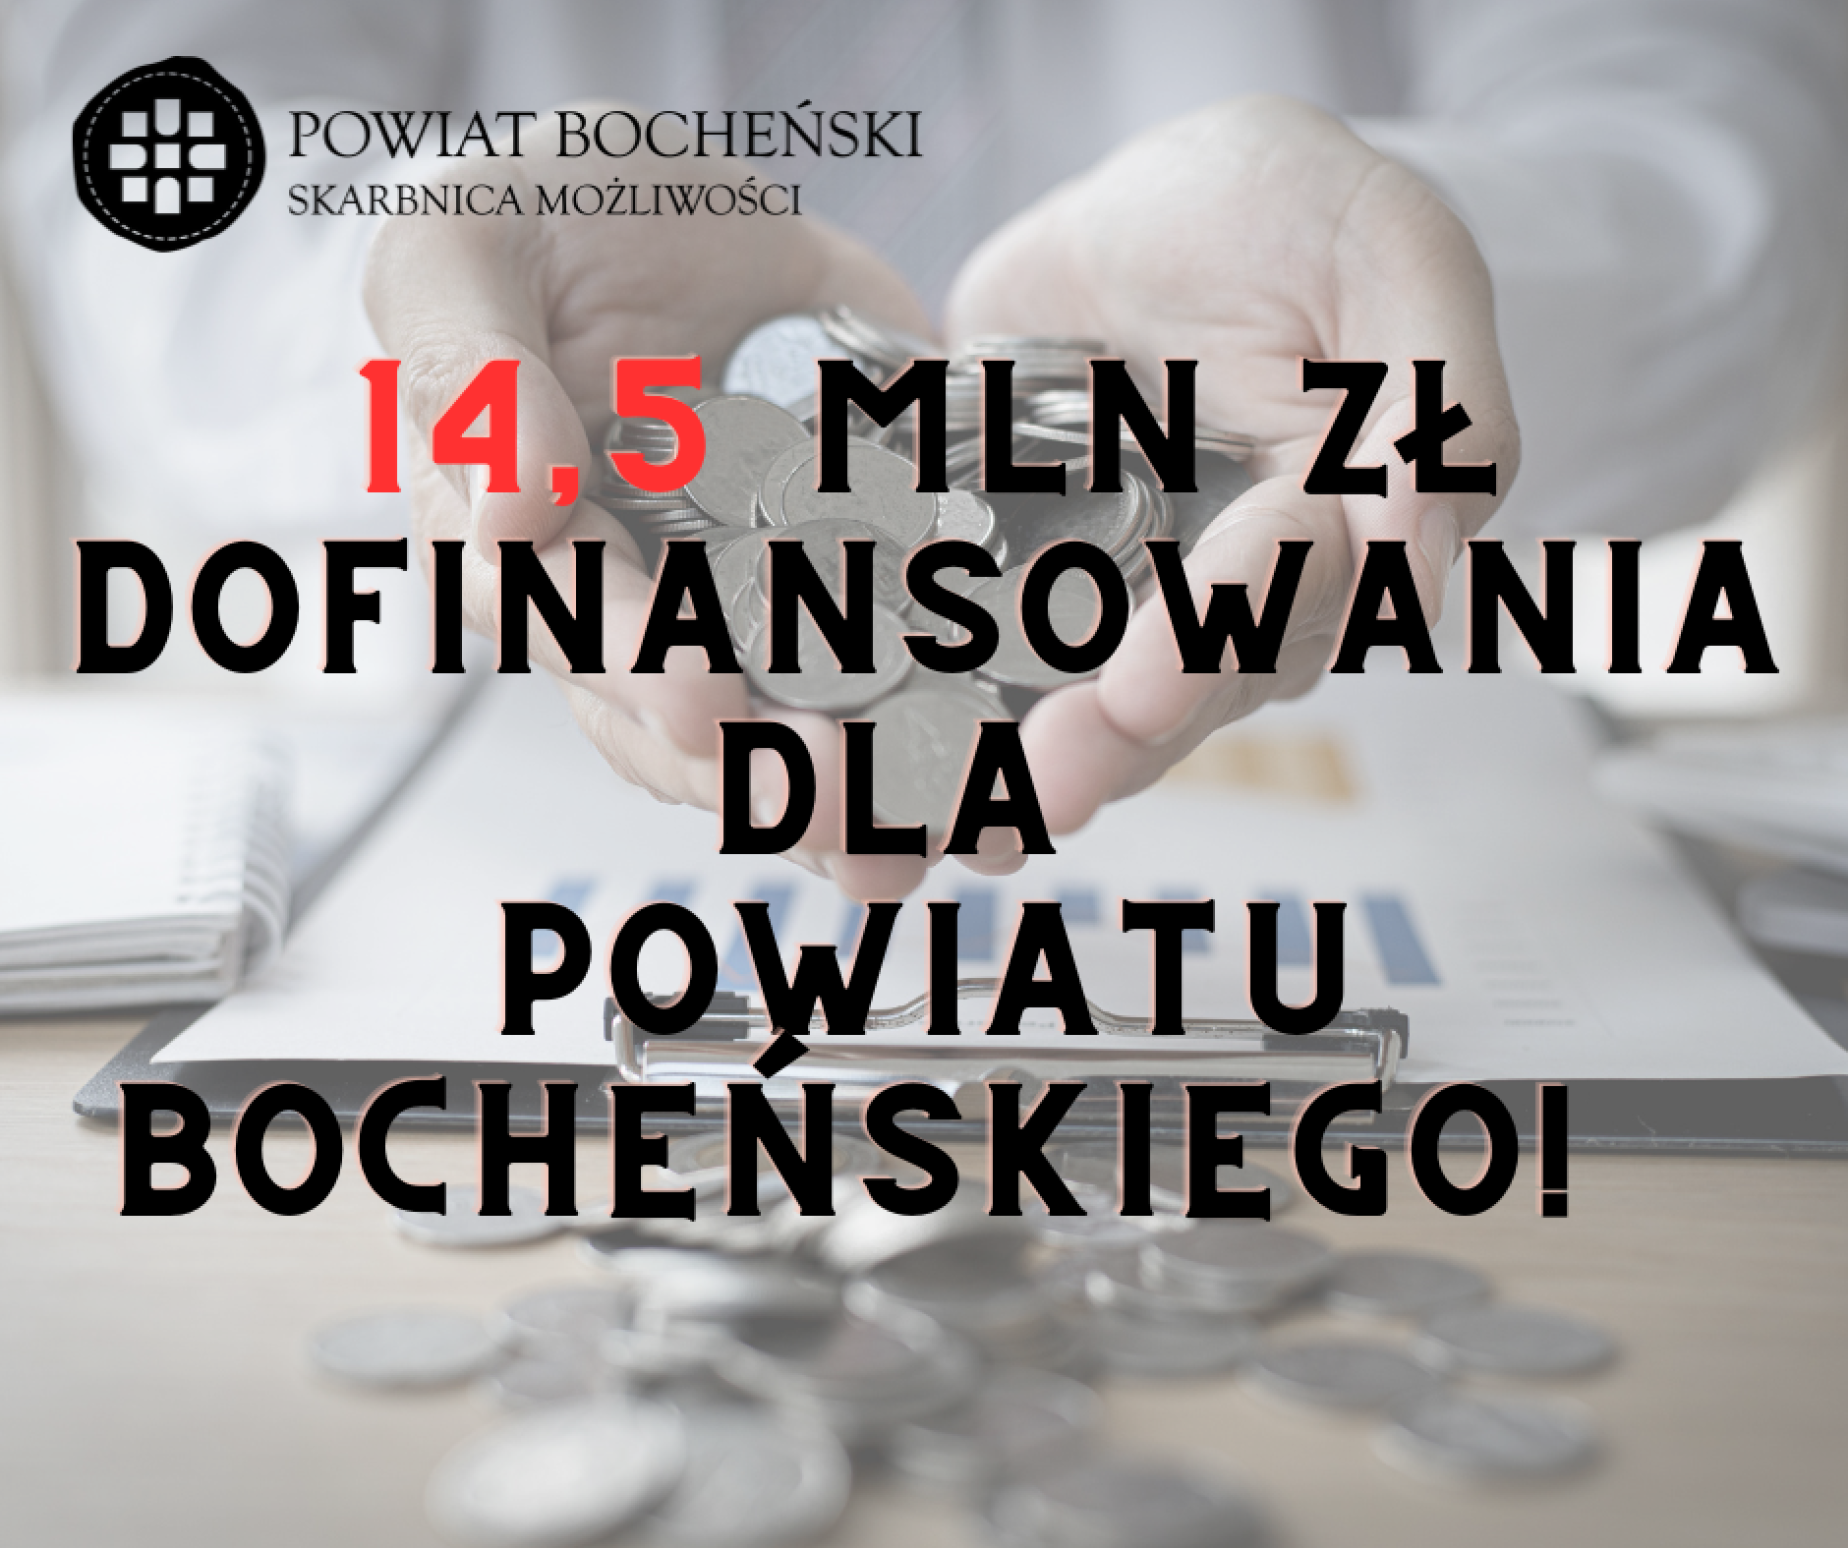 14,5 mln zł dofinansowania dla Powiatu Bocheńskiego